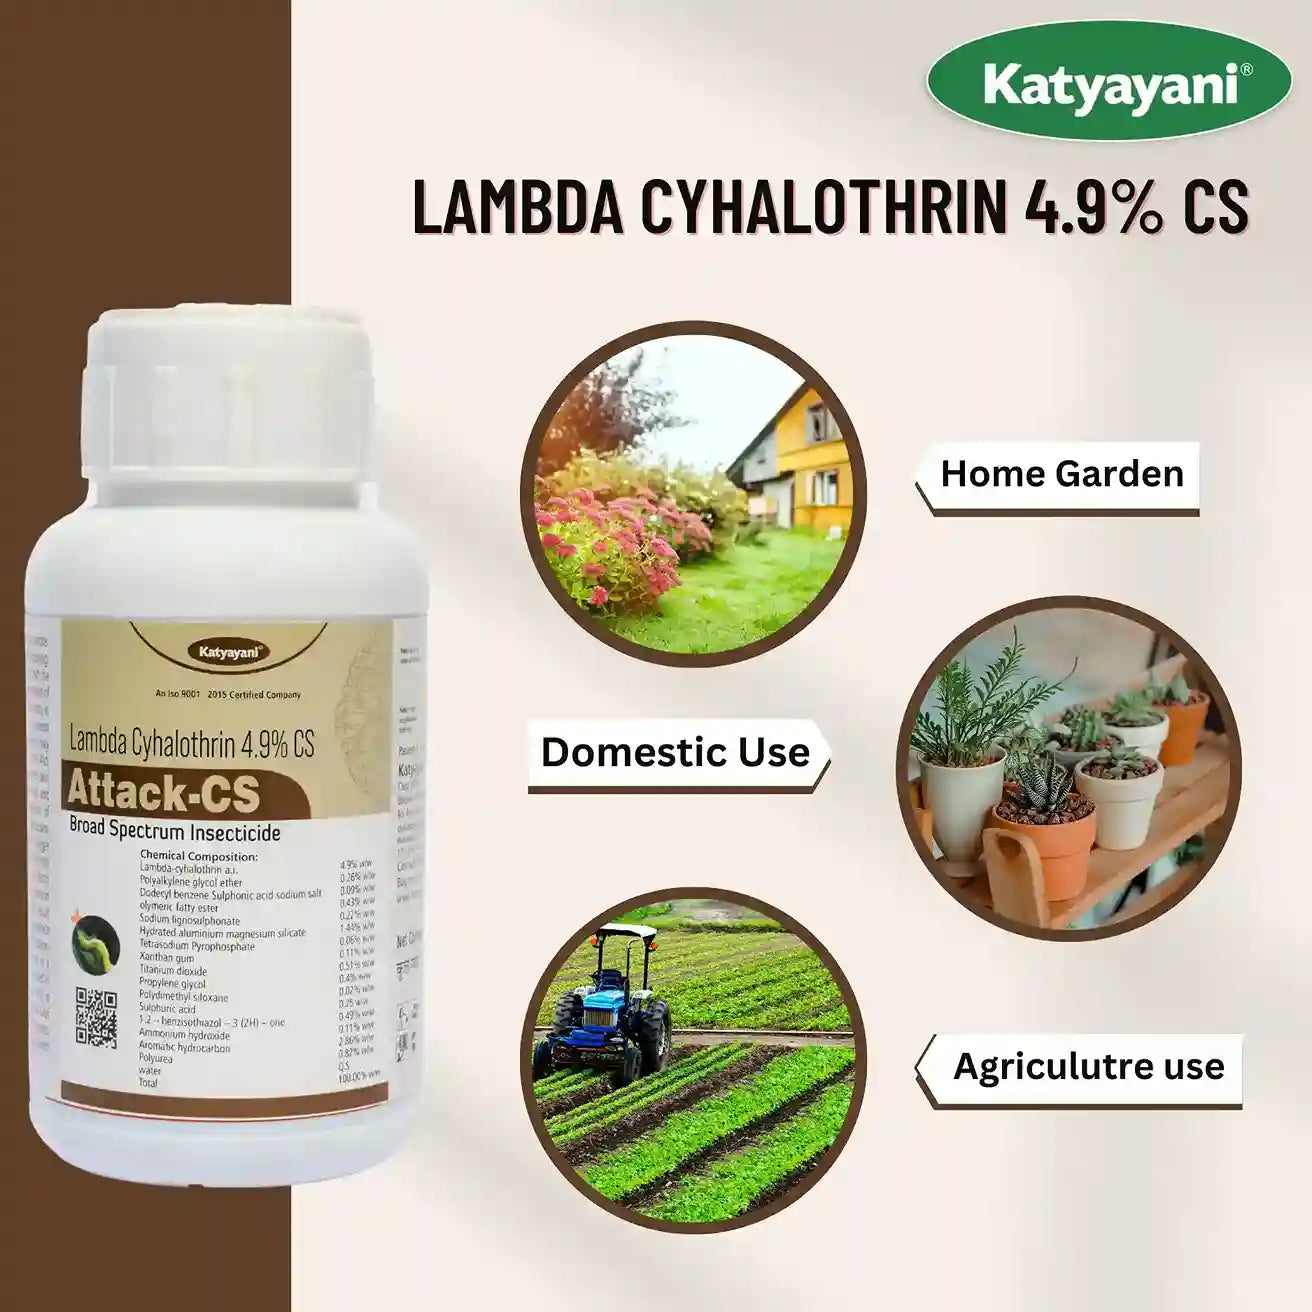 Katyayani Attack-CS (Lambda-Cyhalothrin 4.9 % cs) -Insecticide for flea beetle broad & borer leaf folder